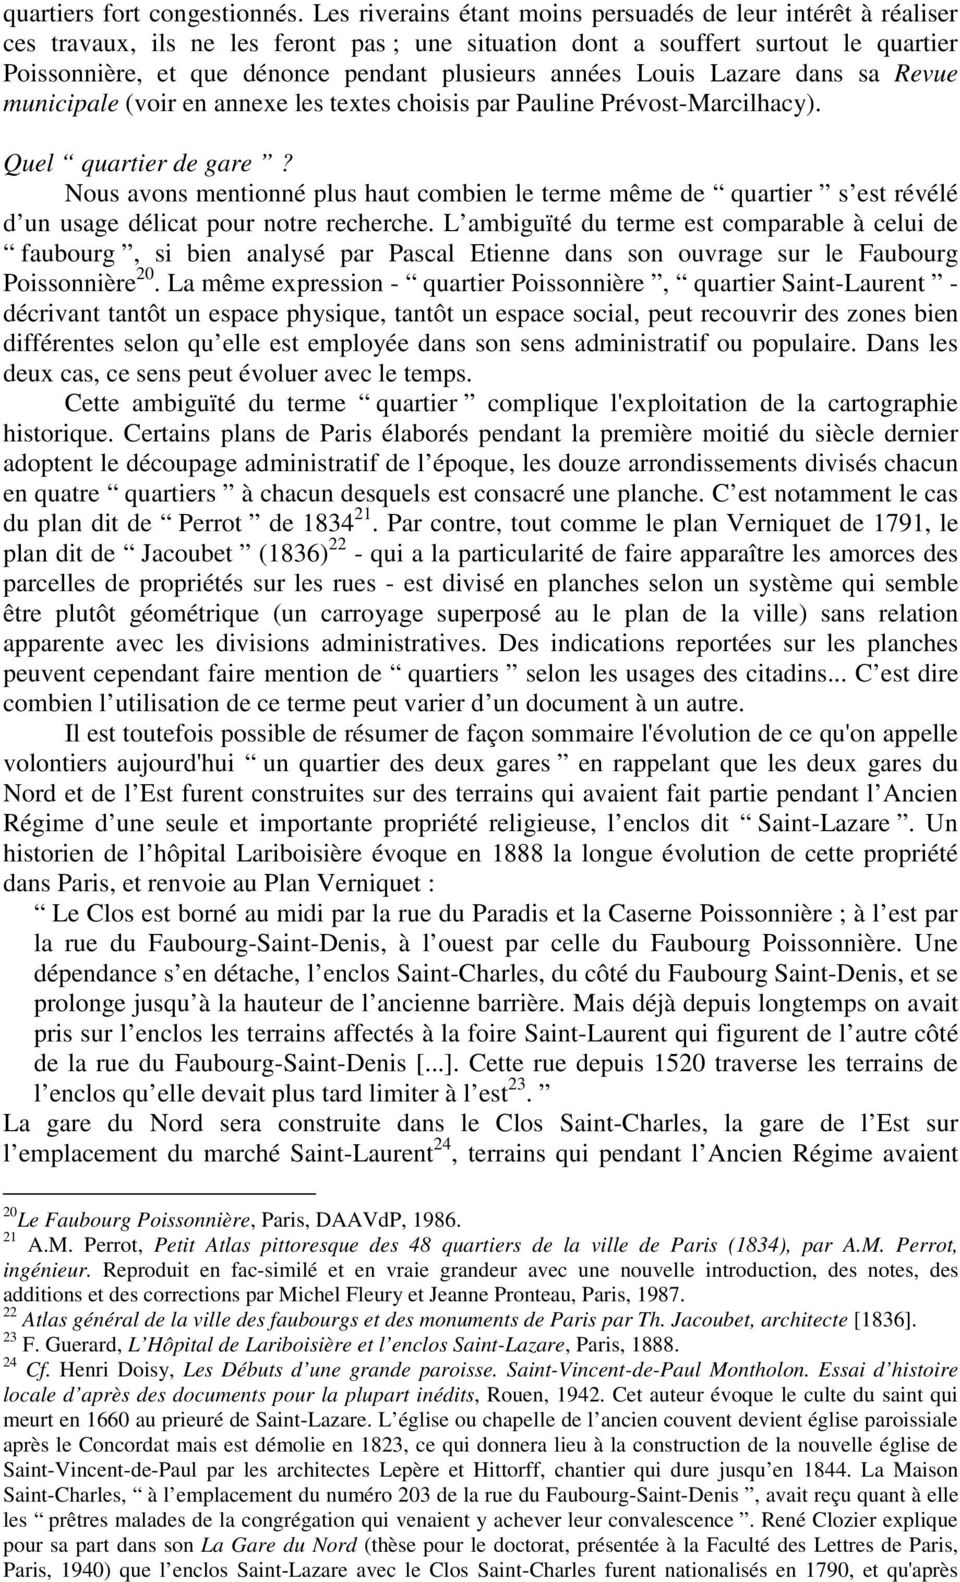 années Louis Lazare dans sa Revue municipale (voir en annexe les textes choisis par Pauline Prévost-Marcilhacy). Quel quartier de gare?